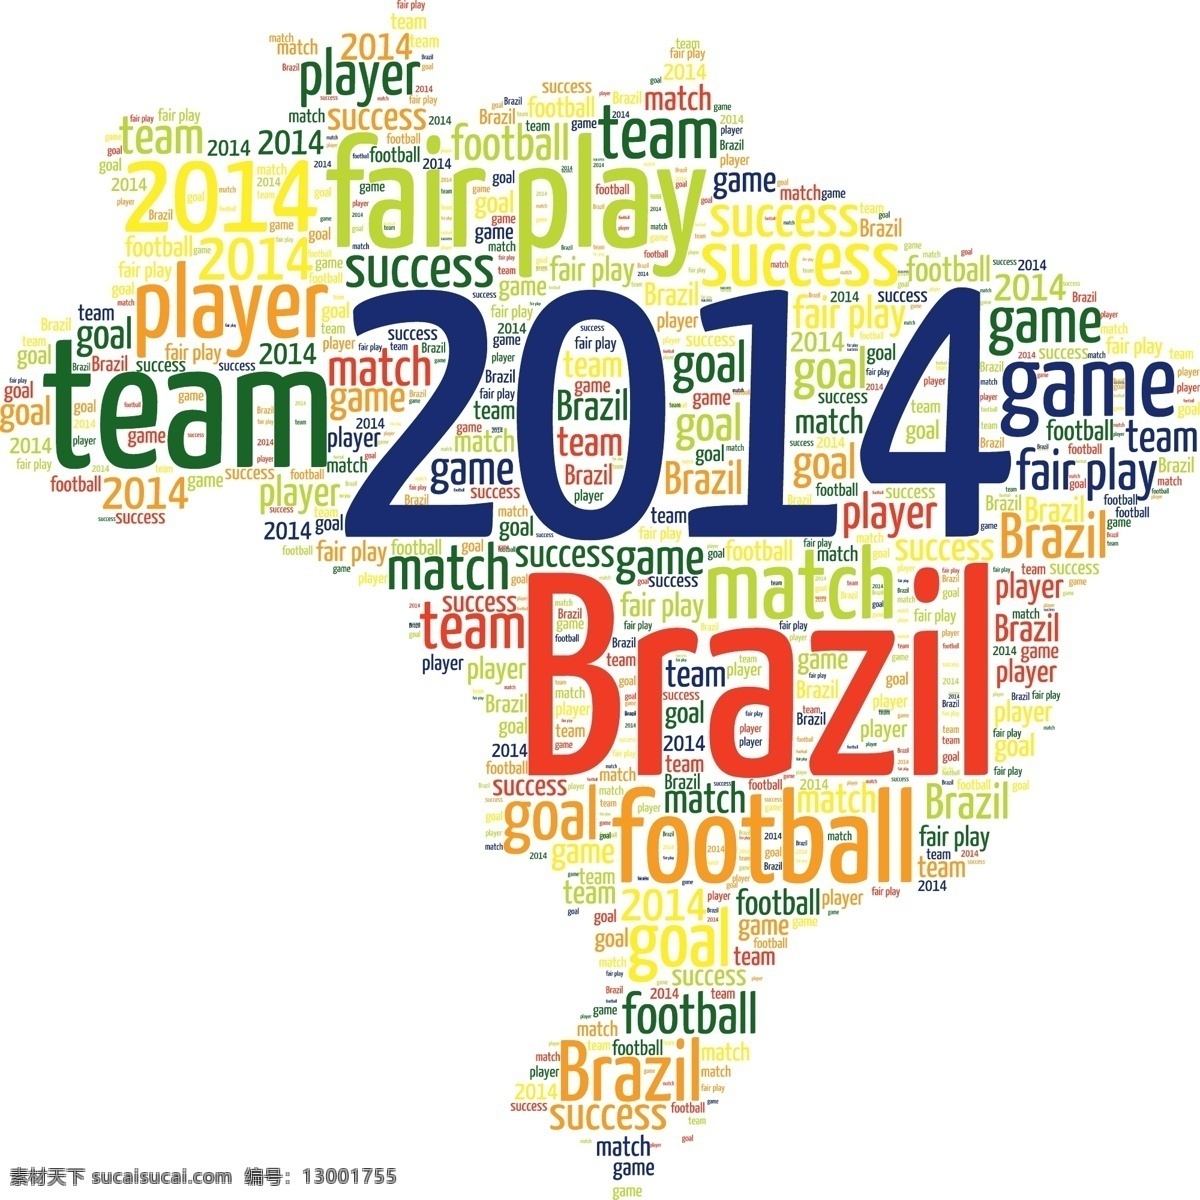 巴西 足球 世界杯 2014 模板下载 素材图片 足球比赛 球赛 地图 体育运动 生活百科 矢量素材 白色